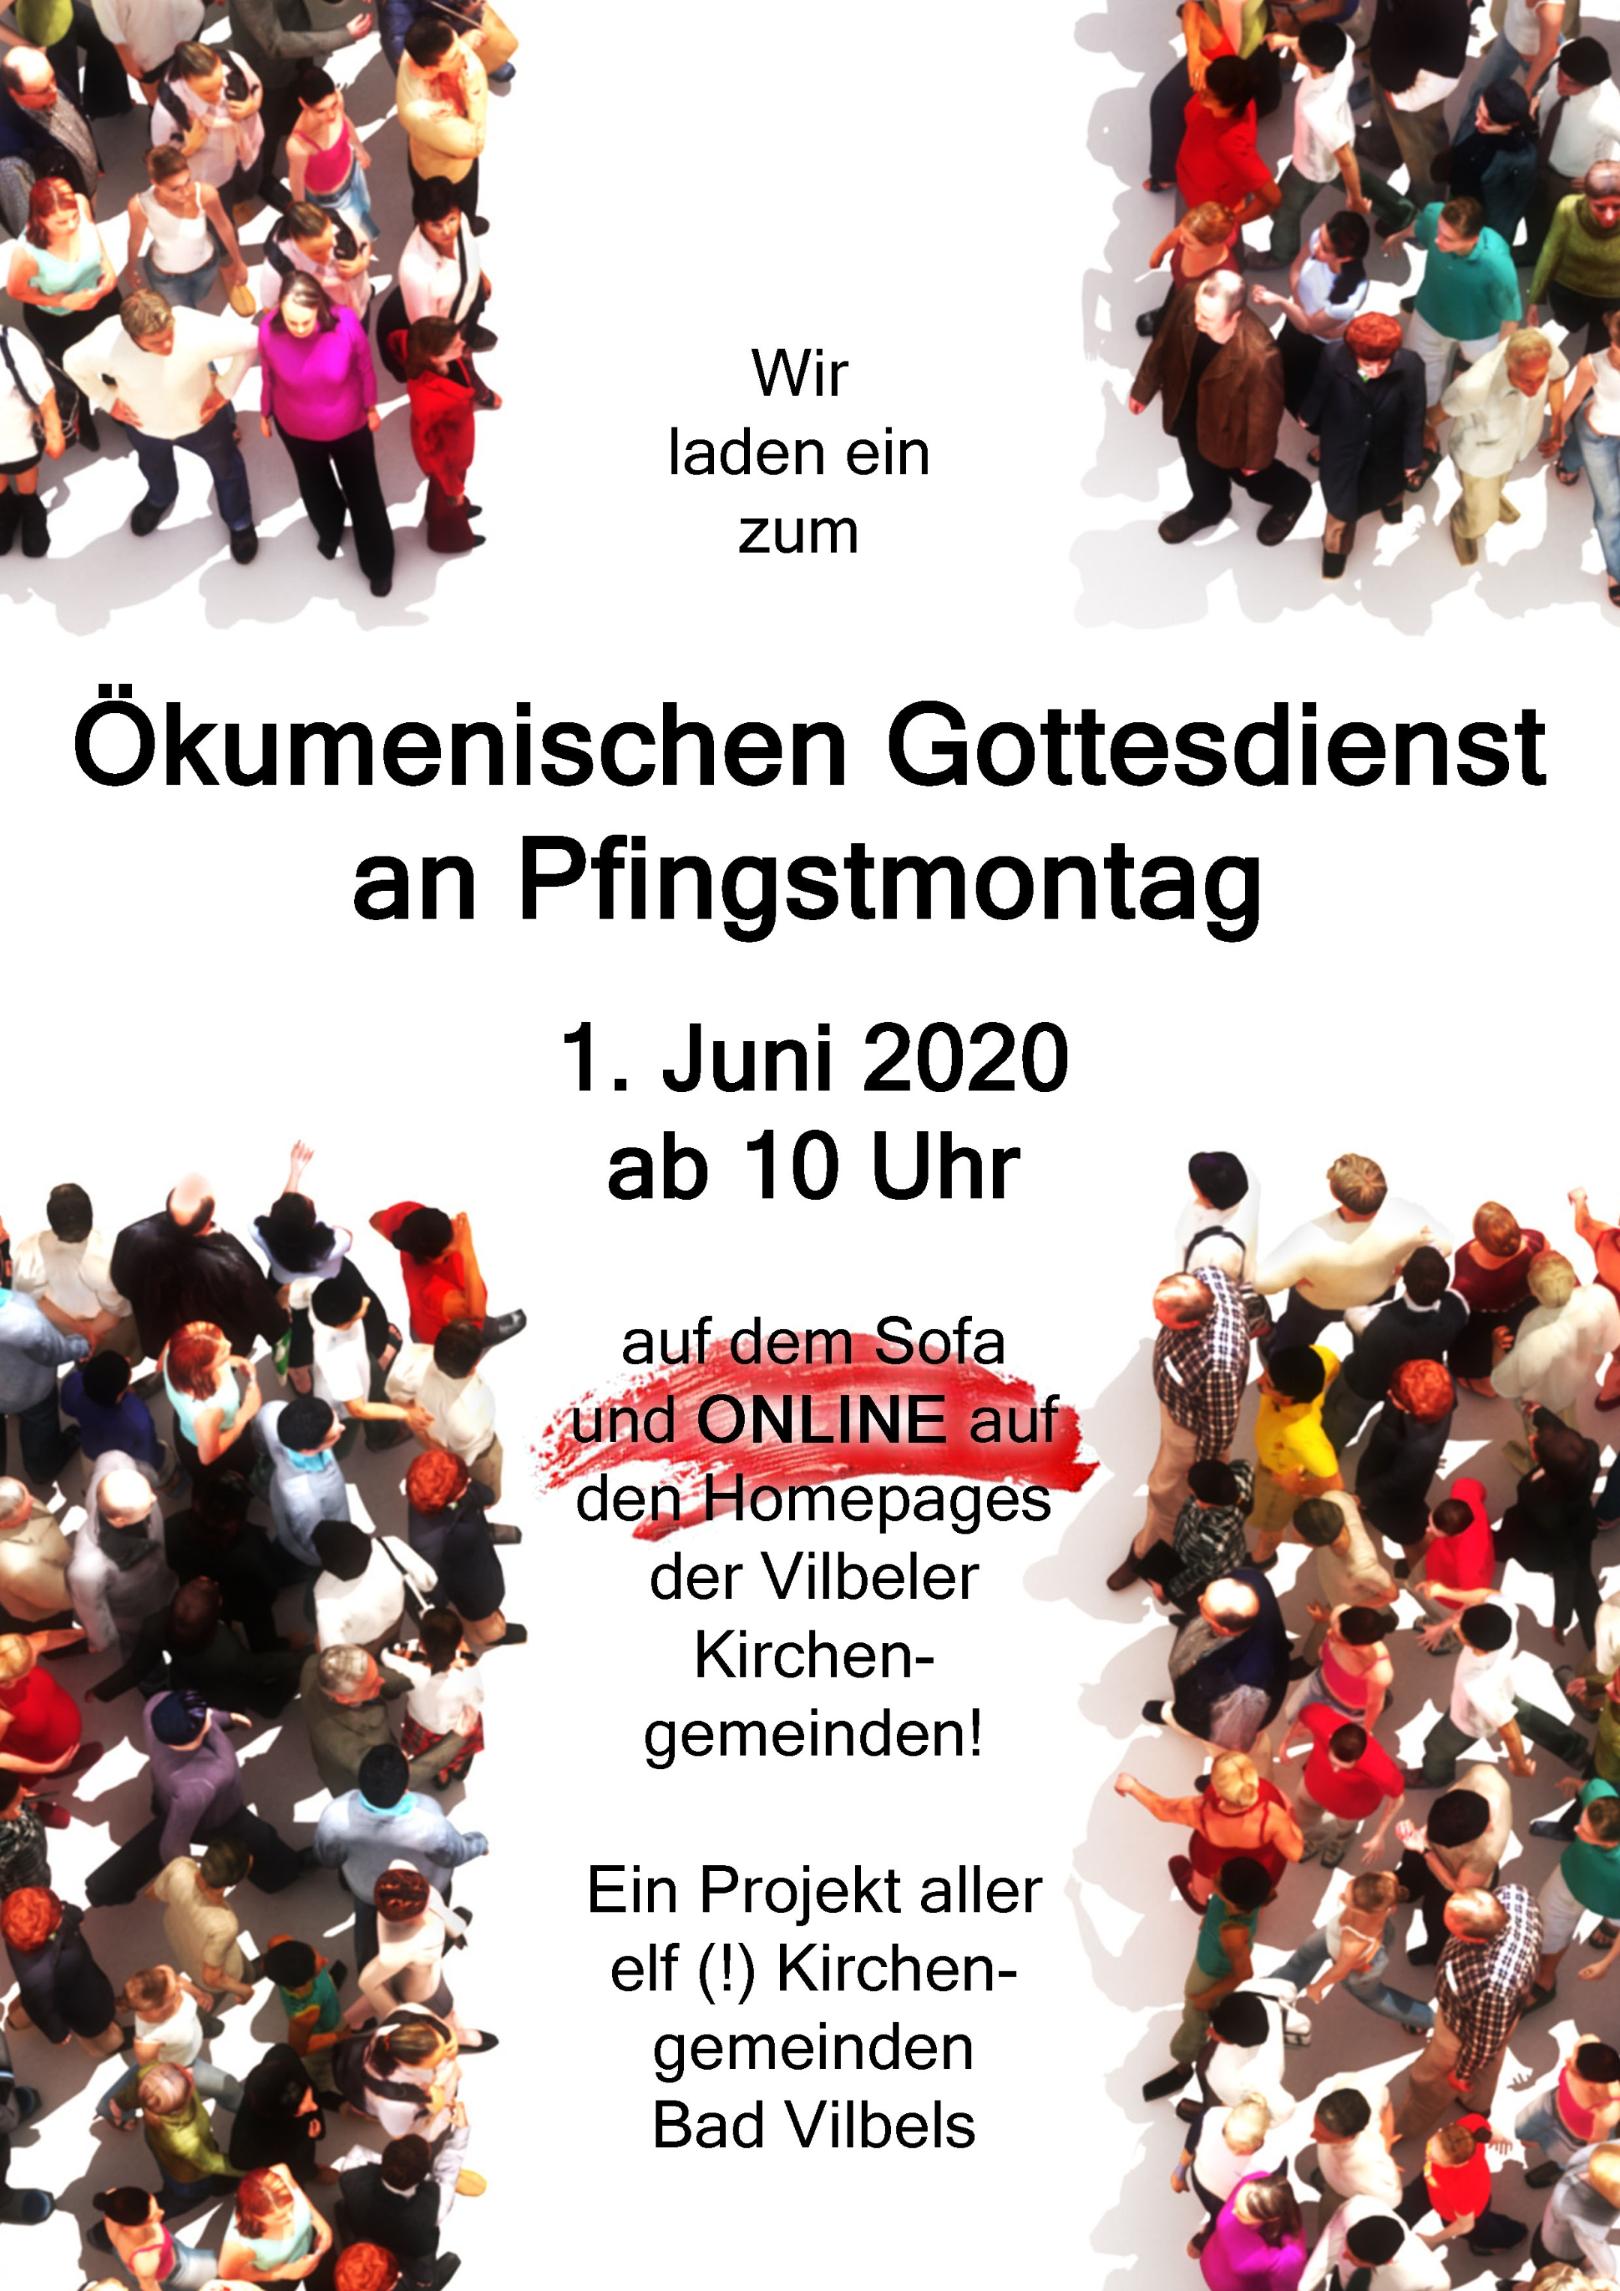 Pfingstmontag 2020 -Online-Gottesdienst (c) Ökumene Bad Vilbel